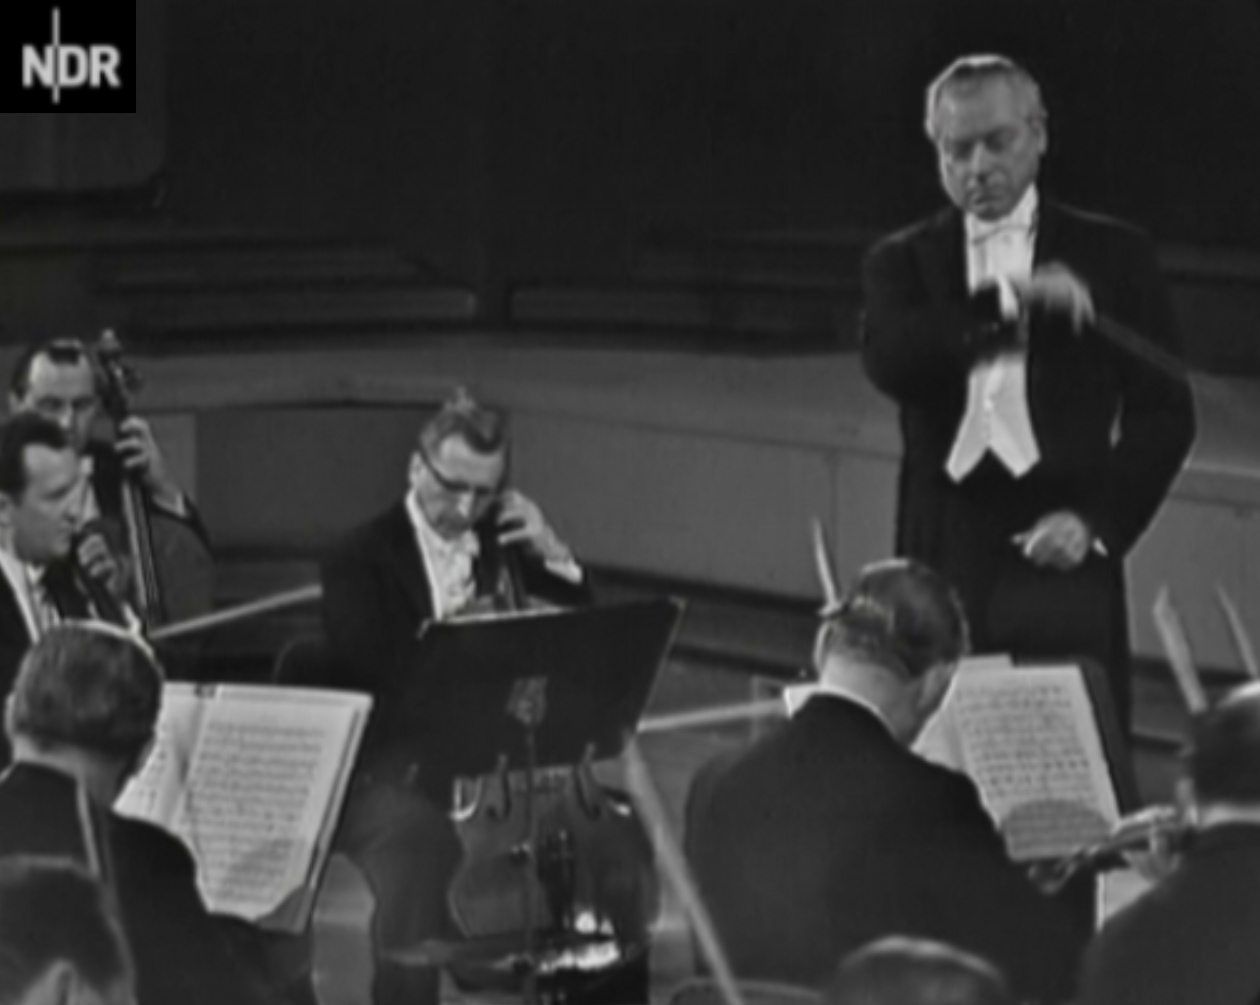 Hans SCHMIDT-ISSERSTEDT dans les années 1960 dirigeant l'Orchestre Symphonique de la NDR (cité d'un film tourné par la NDR, voir la référence dans le texte)